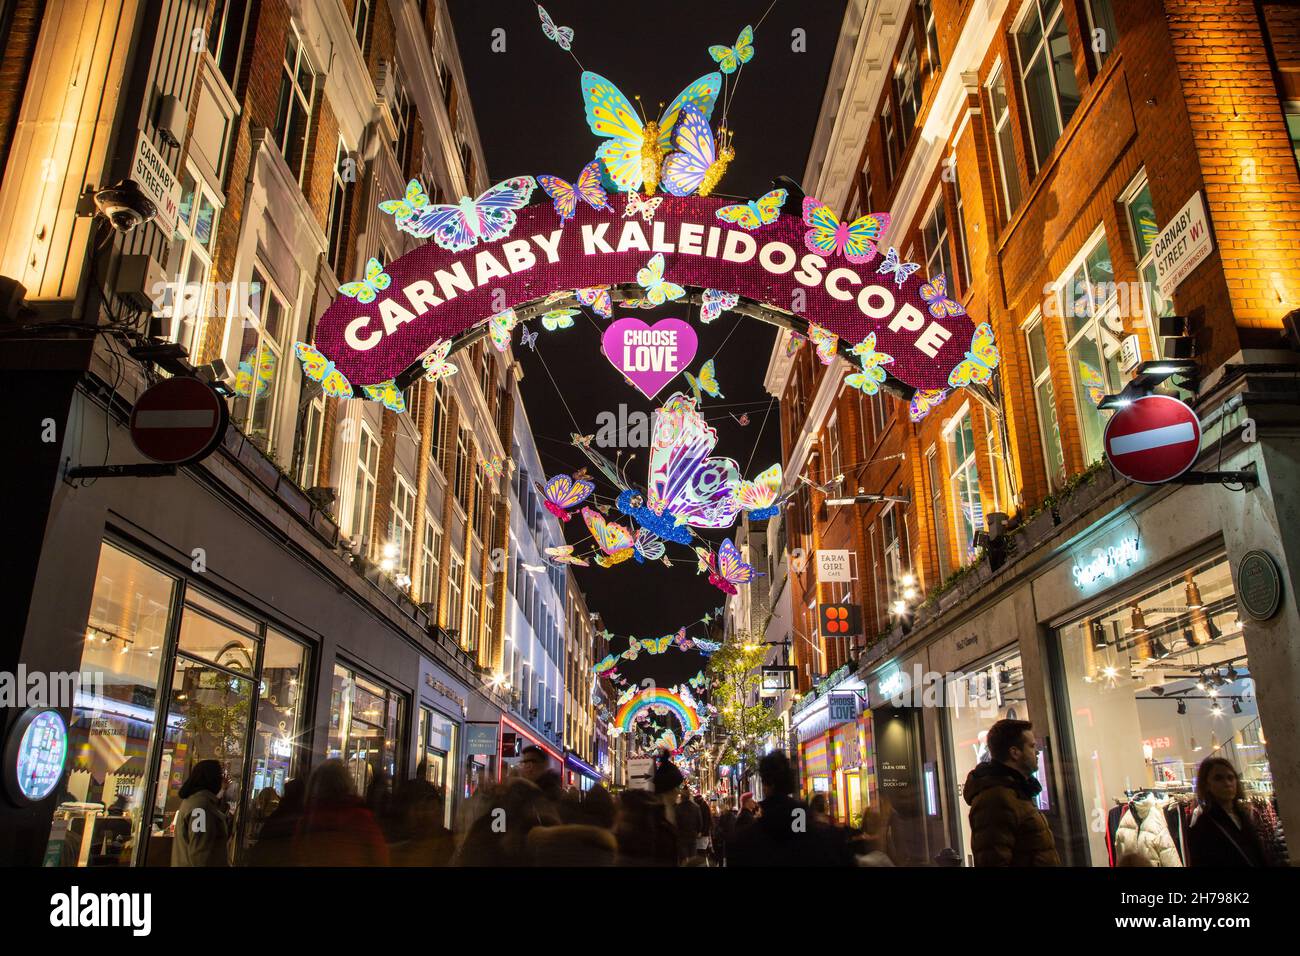 LONDRA, UK - 20 NOVEMBRE 2021: Viste lungo Carnaby Street a Londra a Natale mostrando le decorazioni e fuori dei negozi. Le persone possono essere viste all'esterno Foto Stock